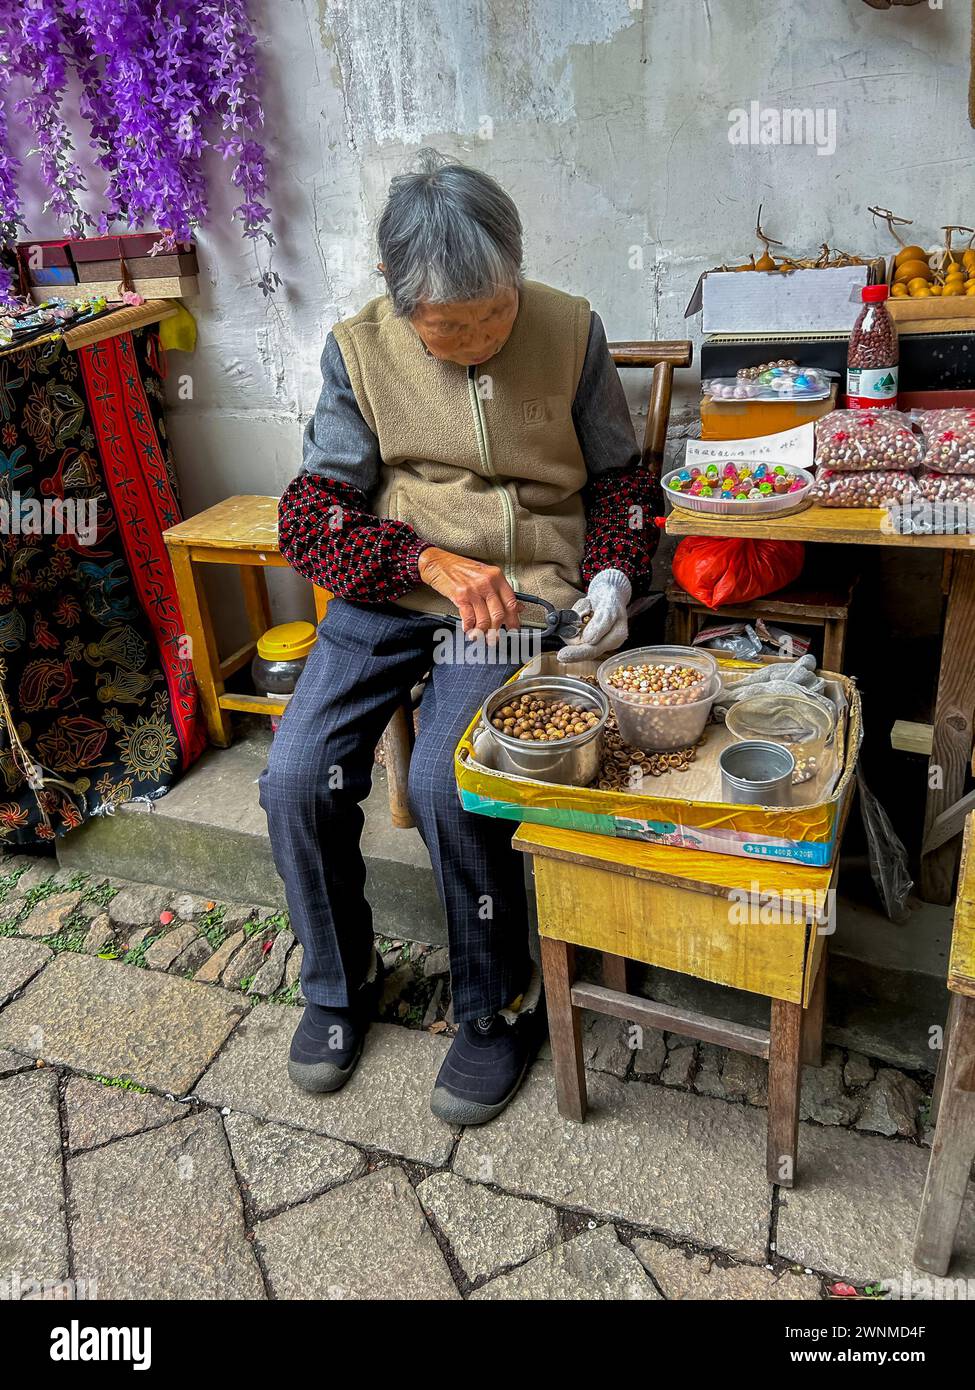 Suzhou, Cina, vecchia donna cinese, seduta fuori per strada, preparando noci per la vendita ai turisti, negozi, città storica, basso reddito Foto Stock